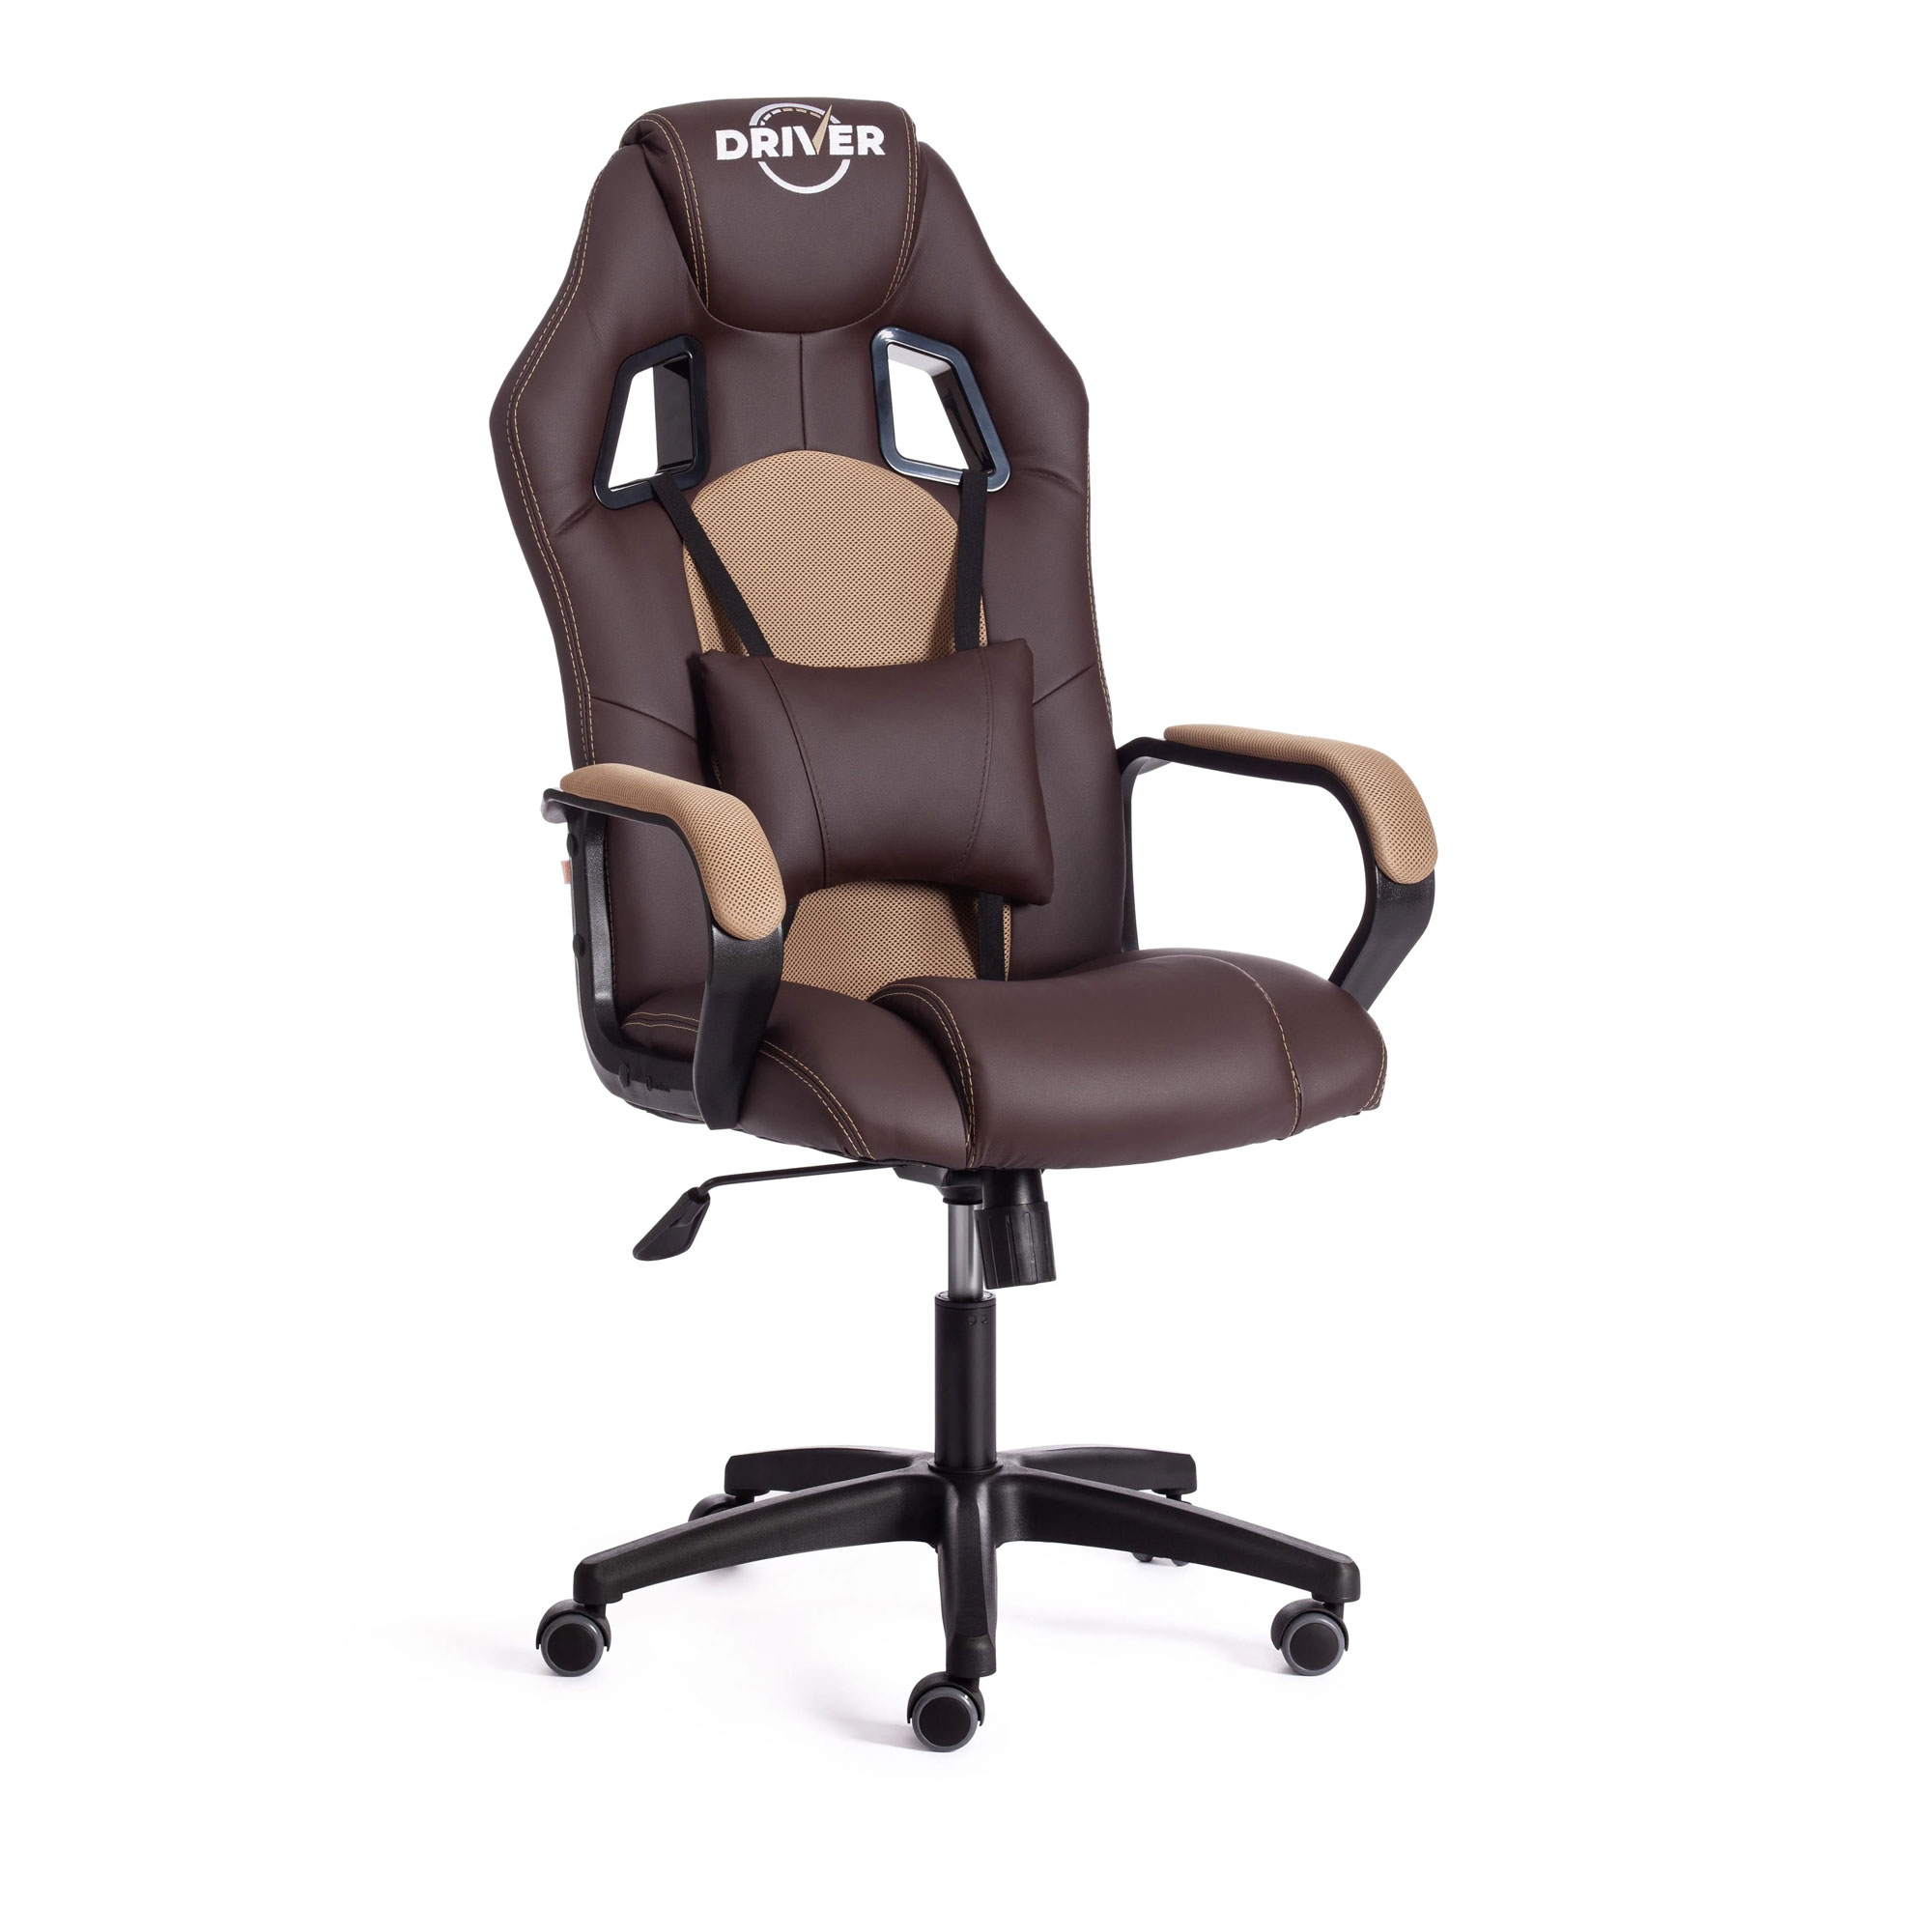 Кресло компьютерное TC Driver искусственная кожа коричневое с бронзовым 55х49х126 см кресло компьютерное tc driver искусственная кожа чёрное с серым 55х49х126 см